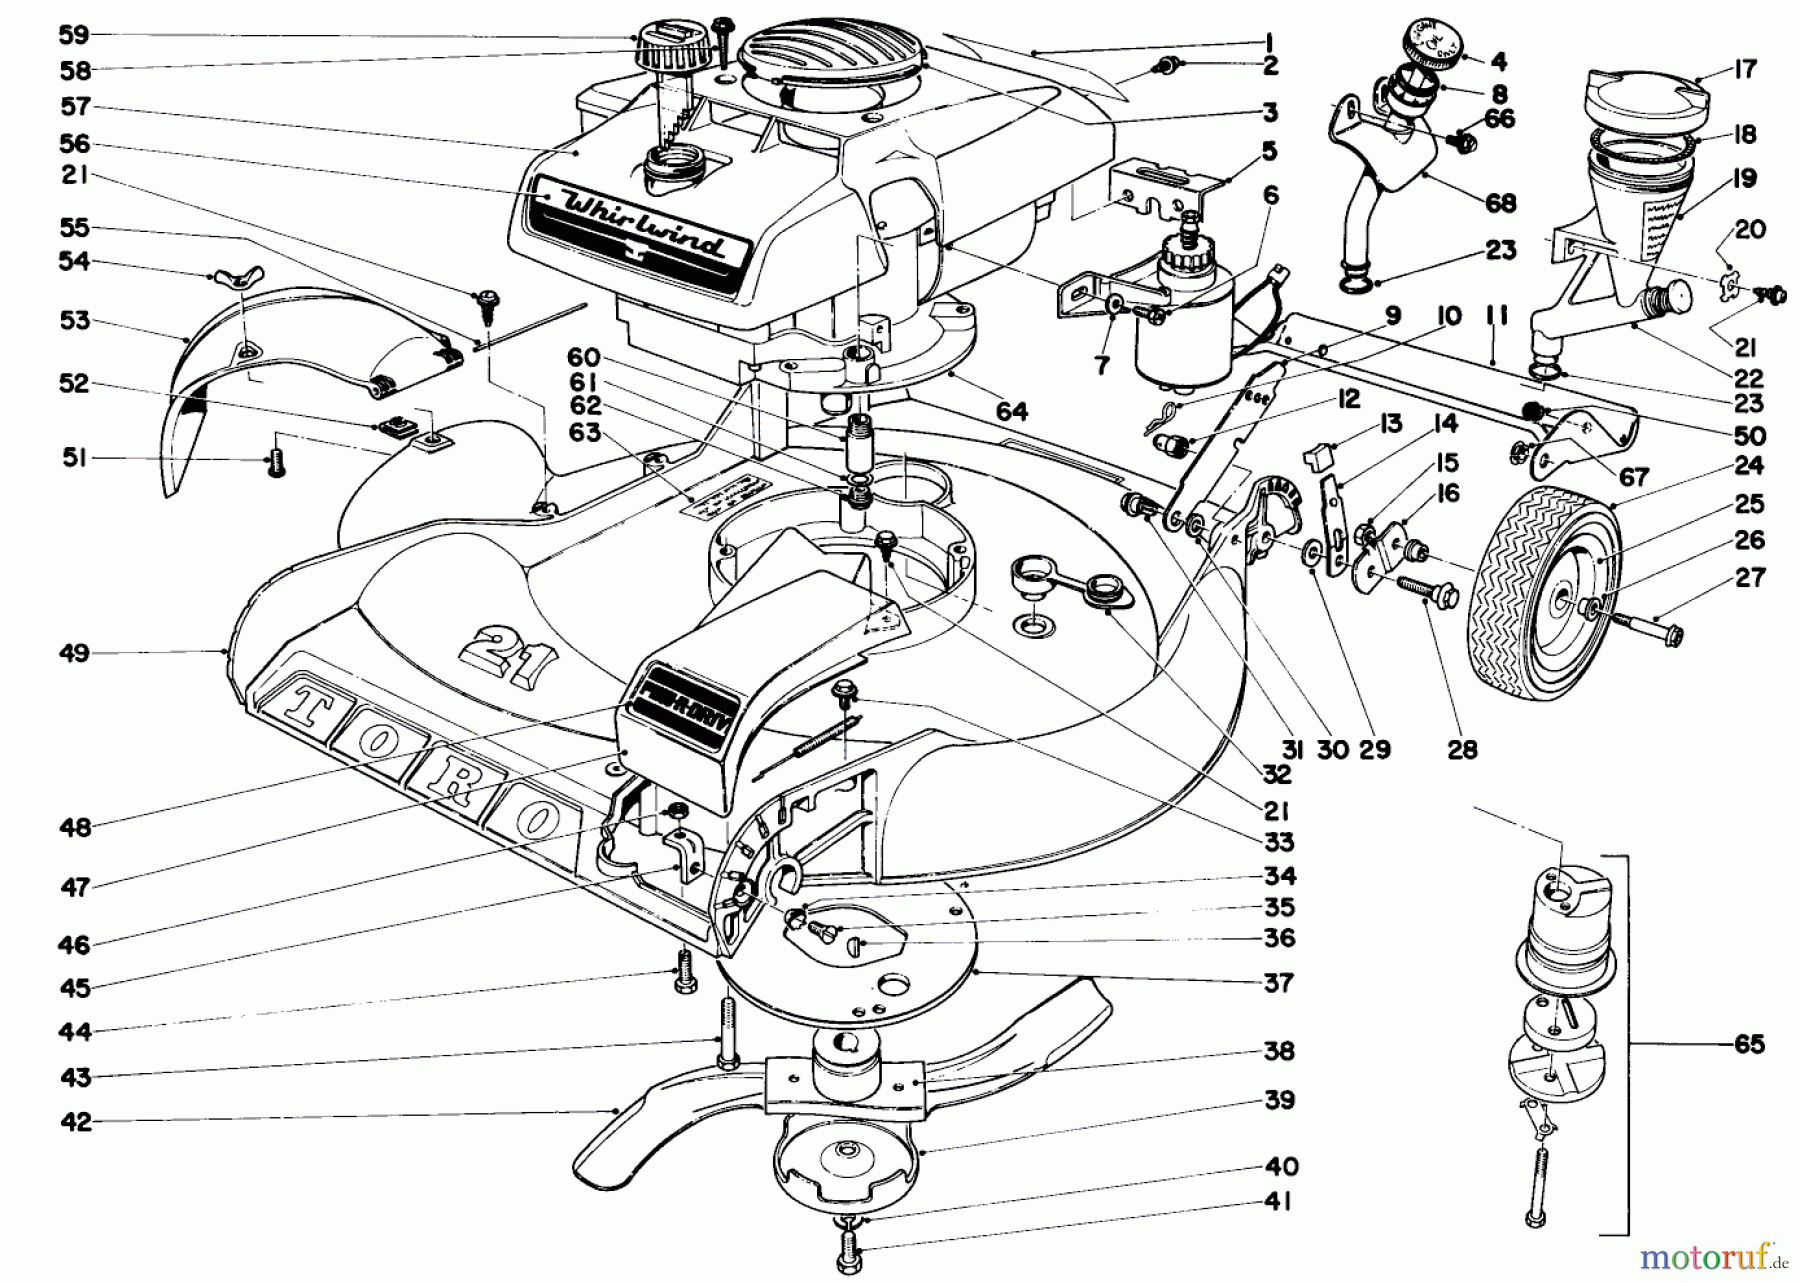  Toro Neu Mowers, Walk-Behind Seite 2 21666 - Toro Whirlwind Lawnmower, 1970 (0000001-0033908) 21